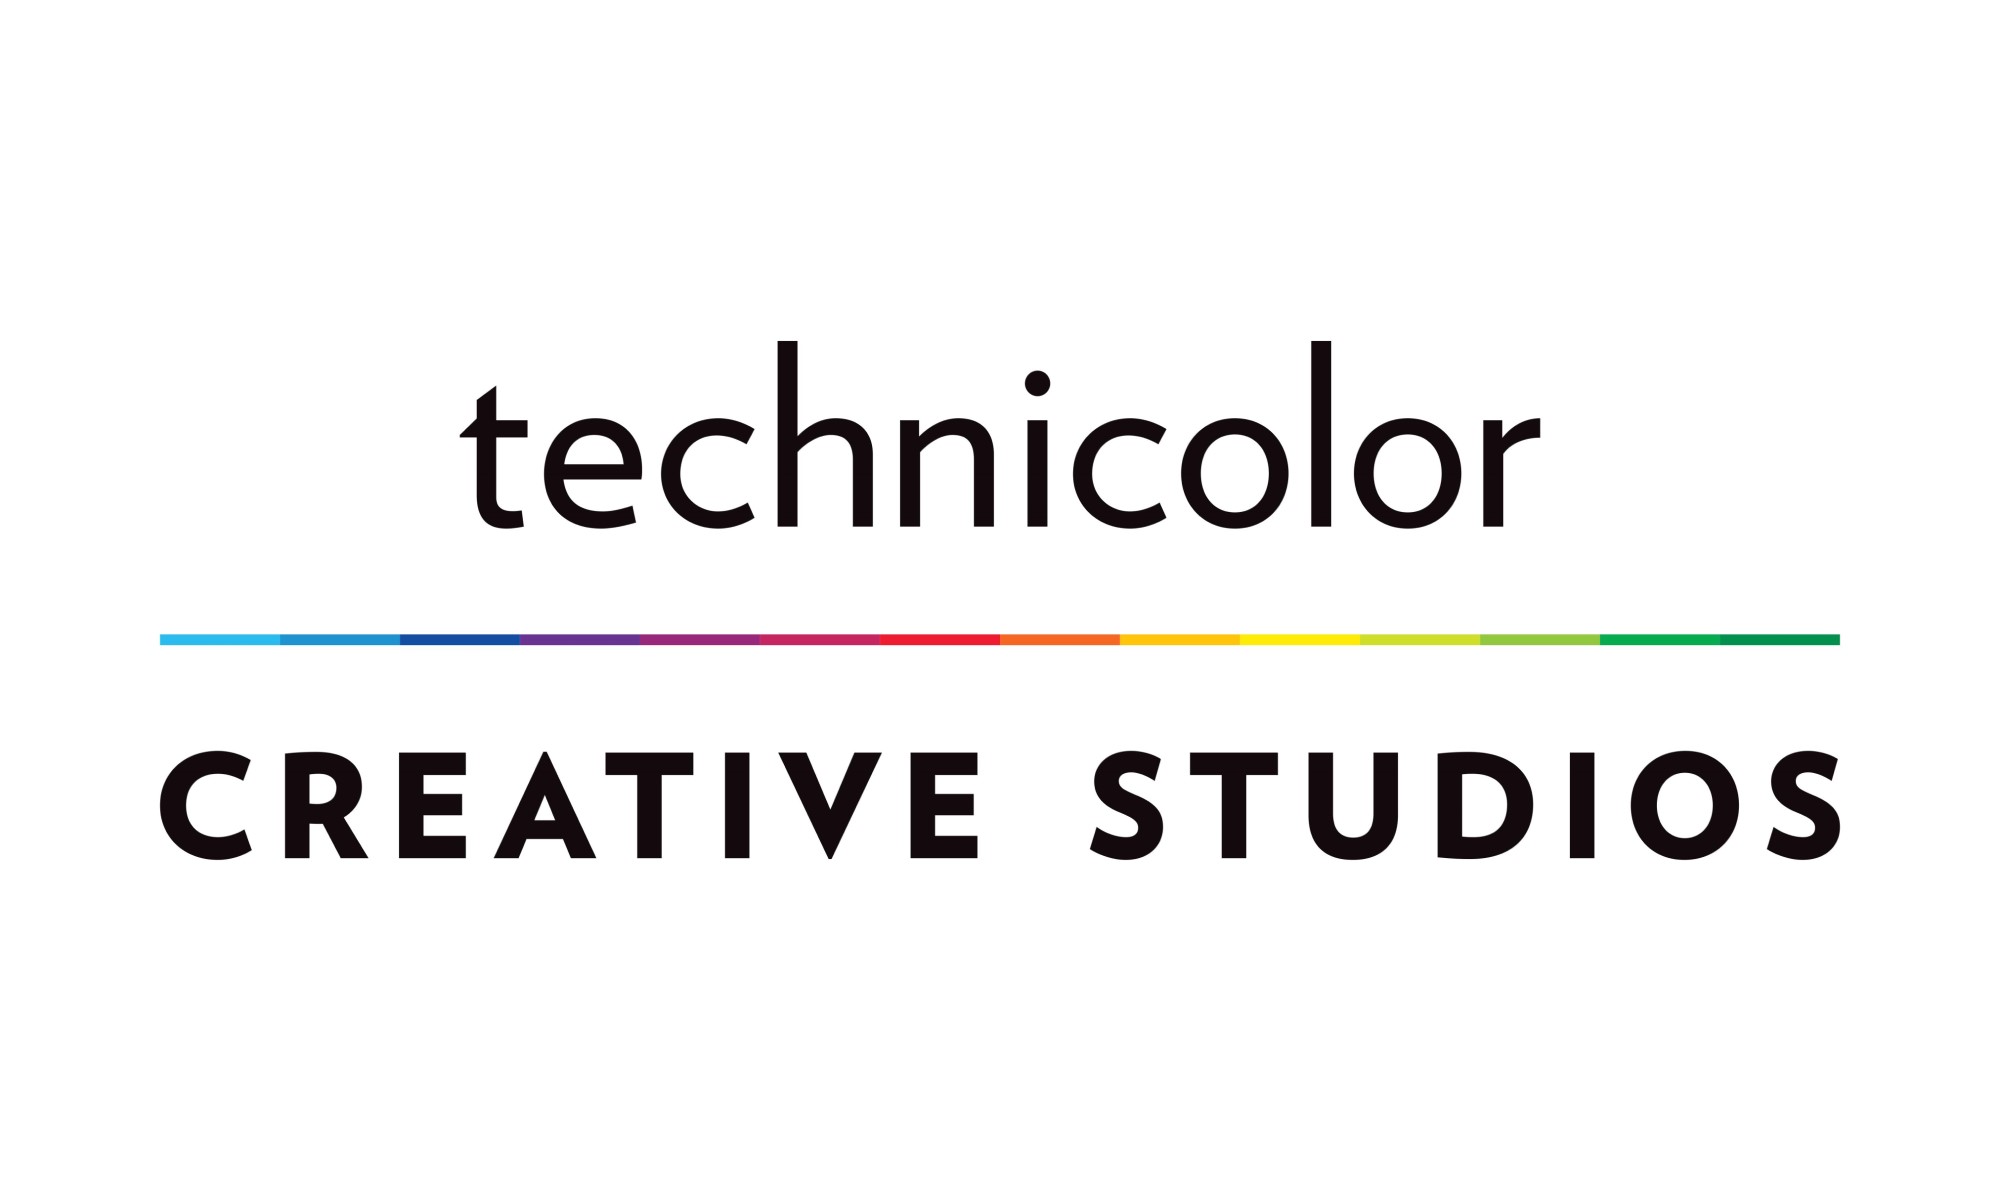 Technicolor Creative